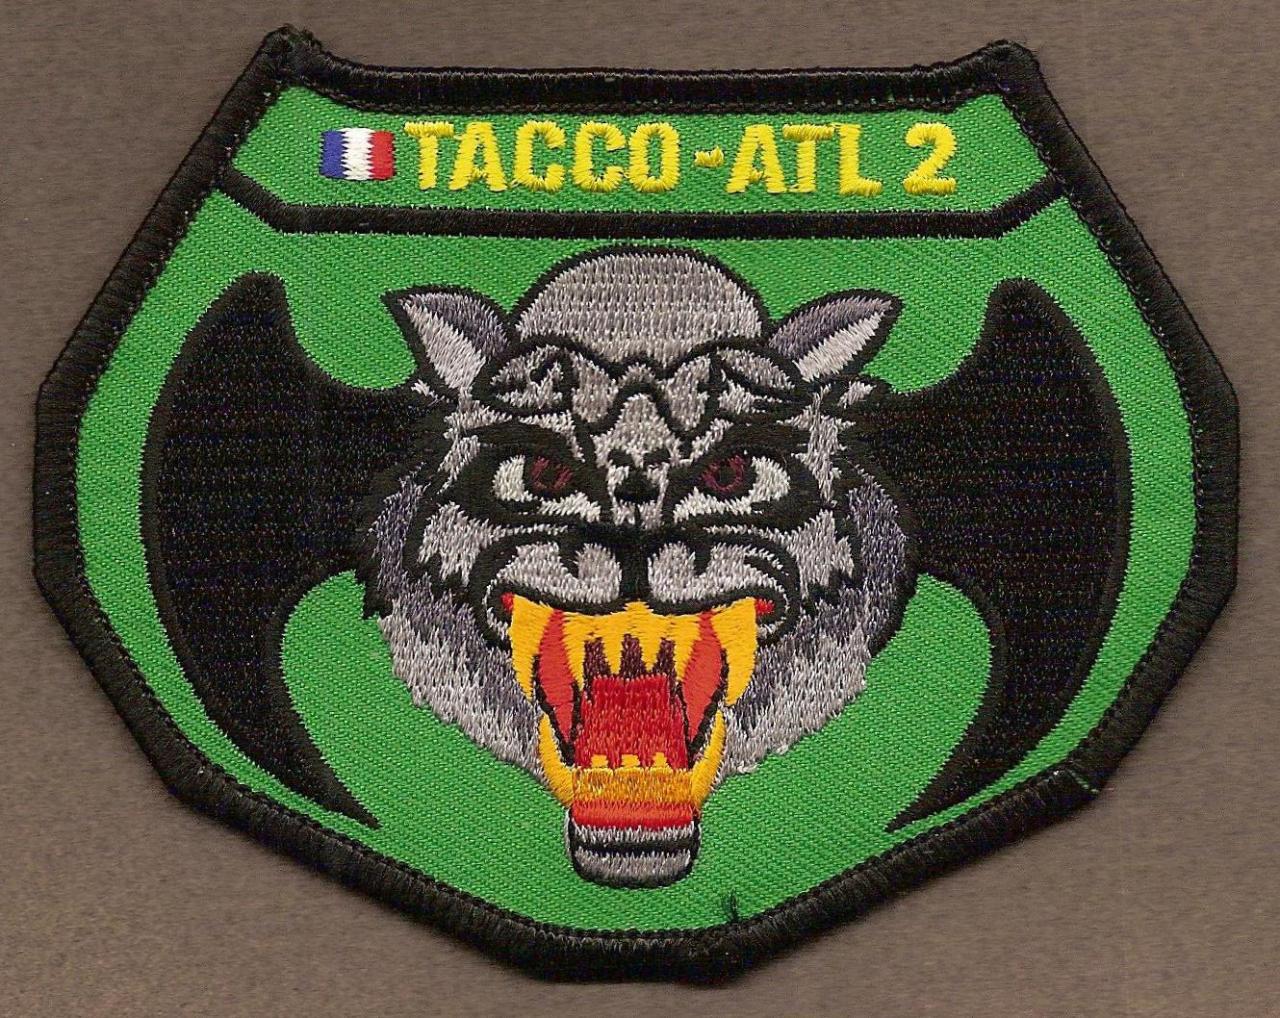 ATL 2 - Tacco